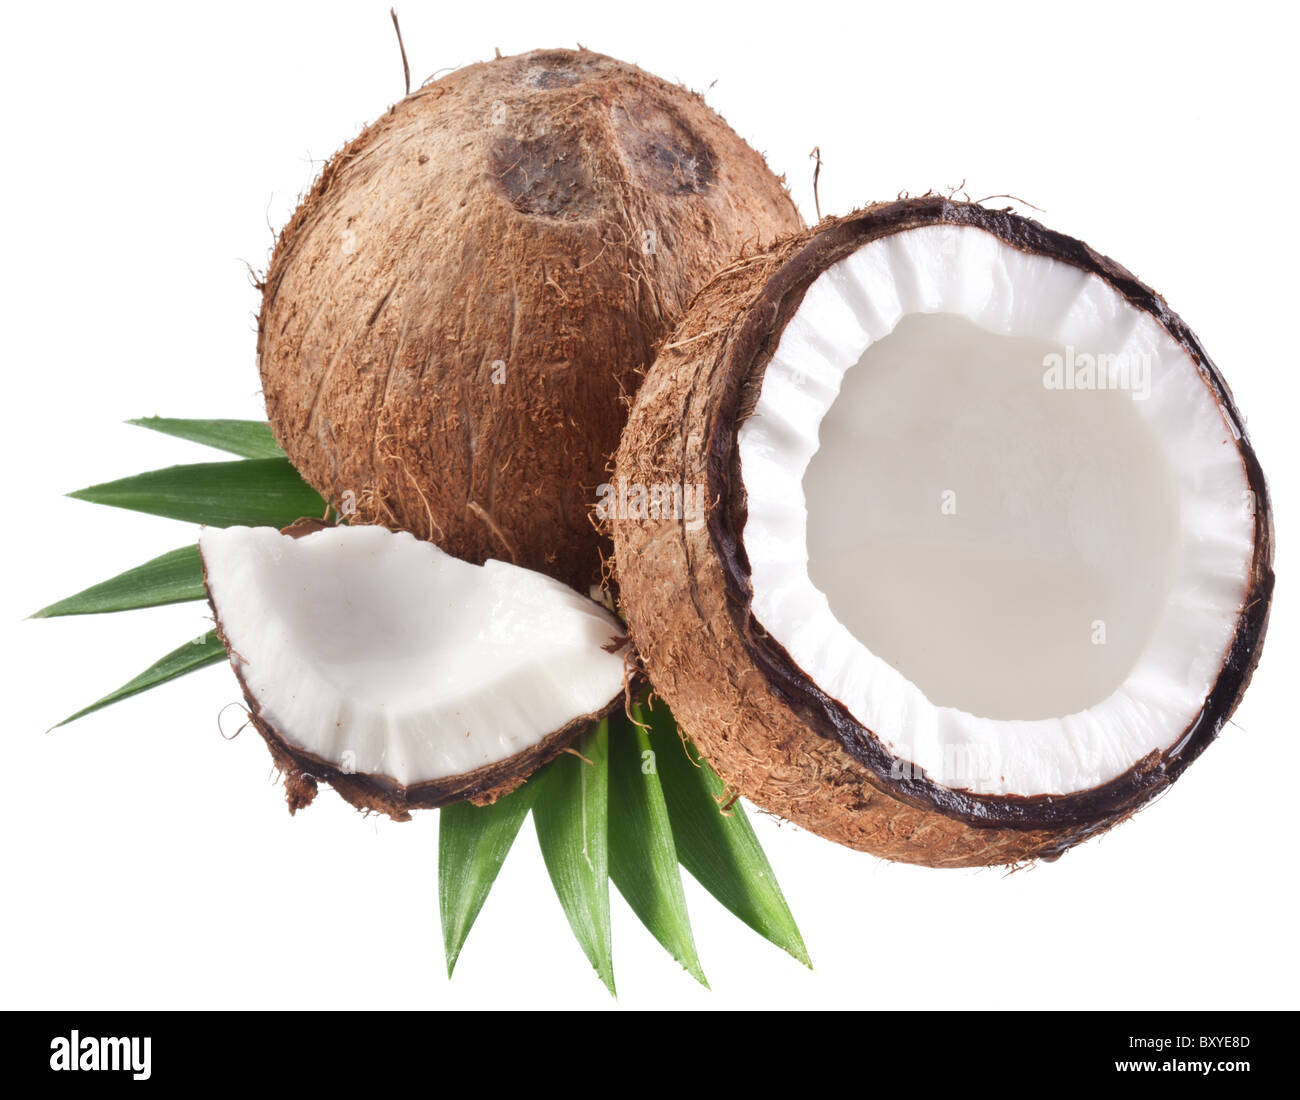 Qualitativ hochwertige Fotos von Kokosnüssen auf weißem Hintergrund. Stockfoto